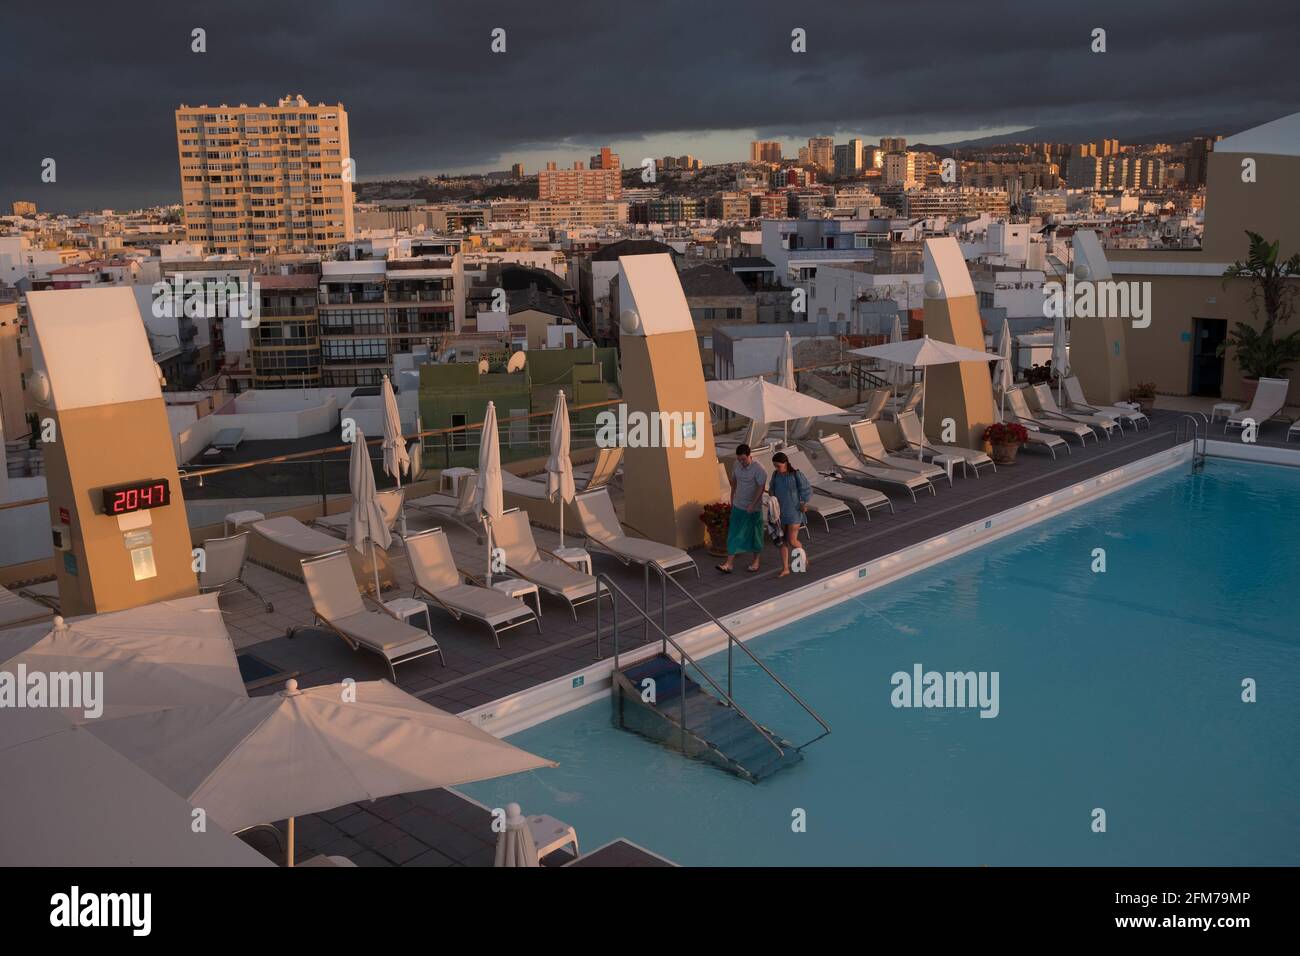 Gran Canaria, eine spanische Kanarische Insel vor der Nordwestküste von Afrika. Blick vom Hotel Reina Isabel auf Pool und Skyline von Las Palmas. Stock Photo